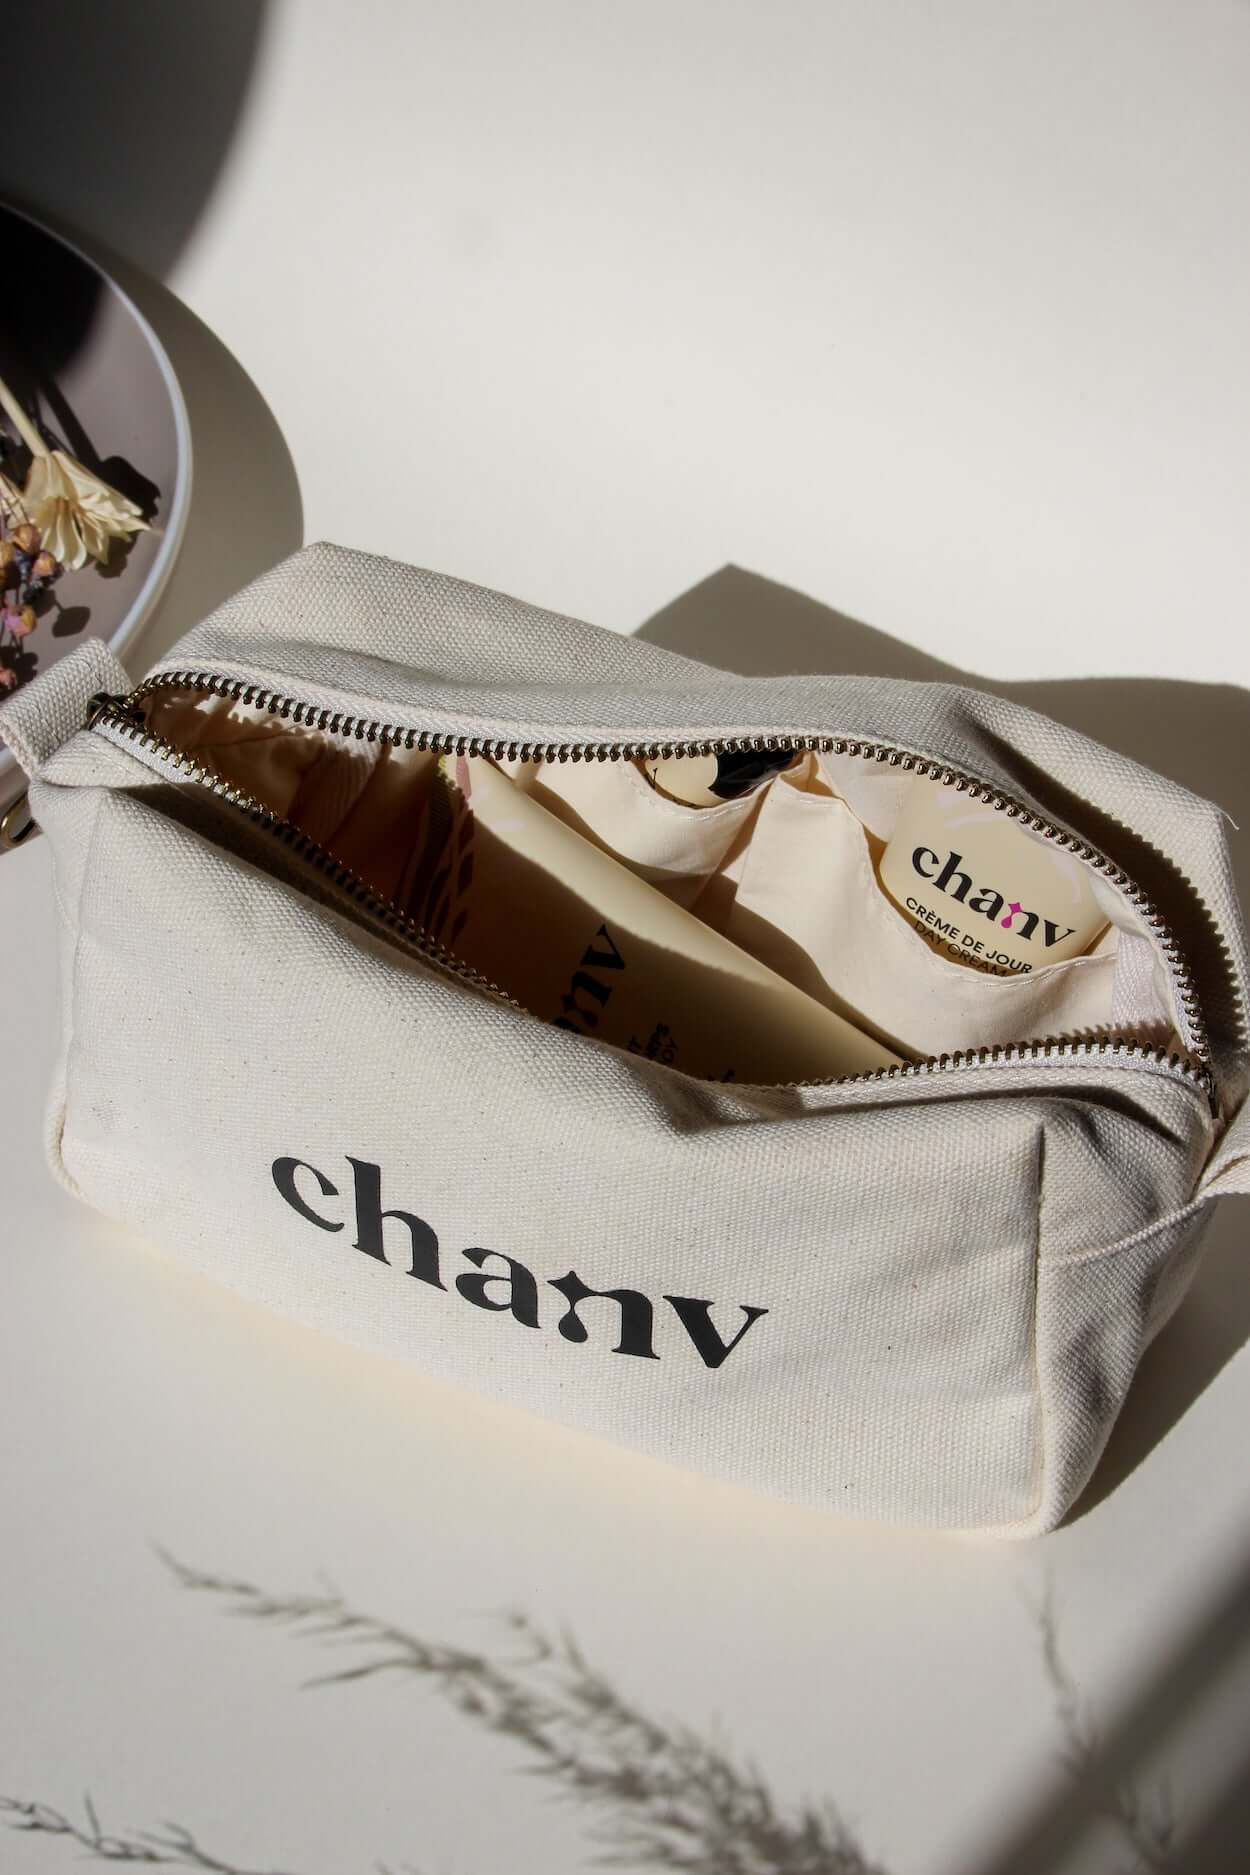 Chanv | Beauty Bag